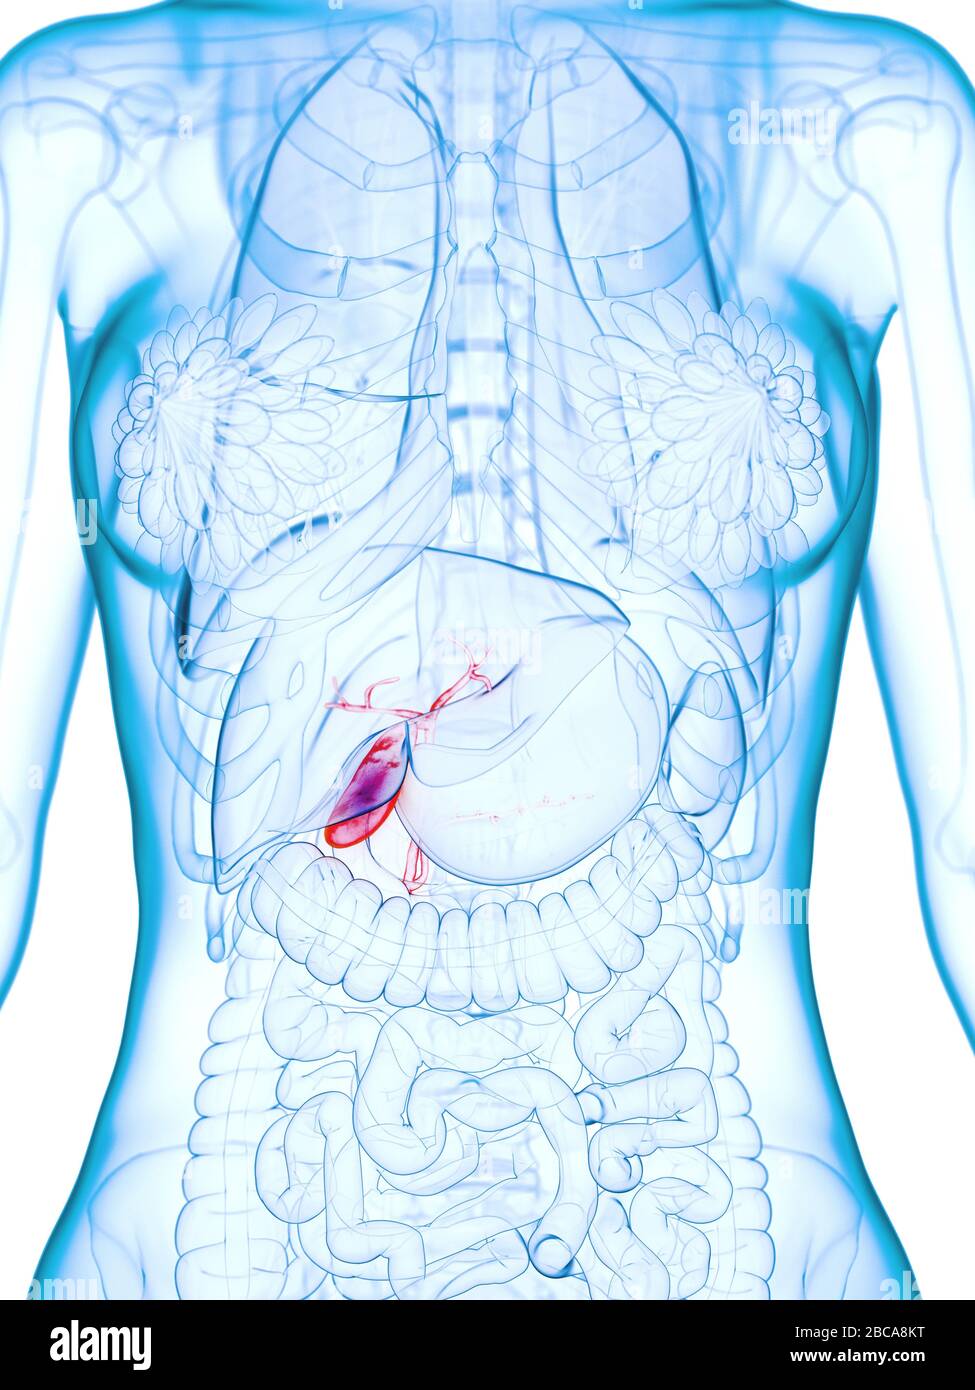 Diseased gallbladder, illustration. Stock Photo